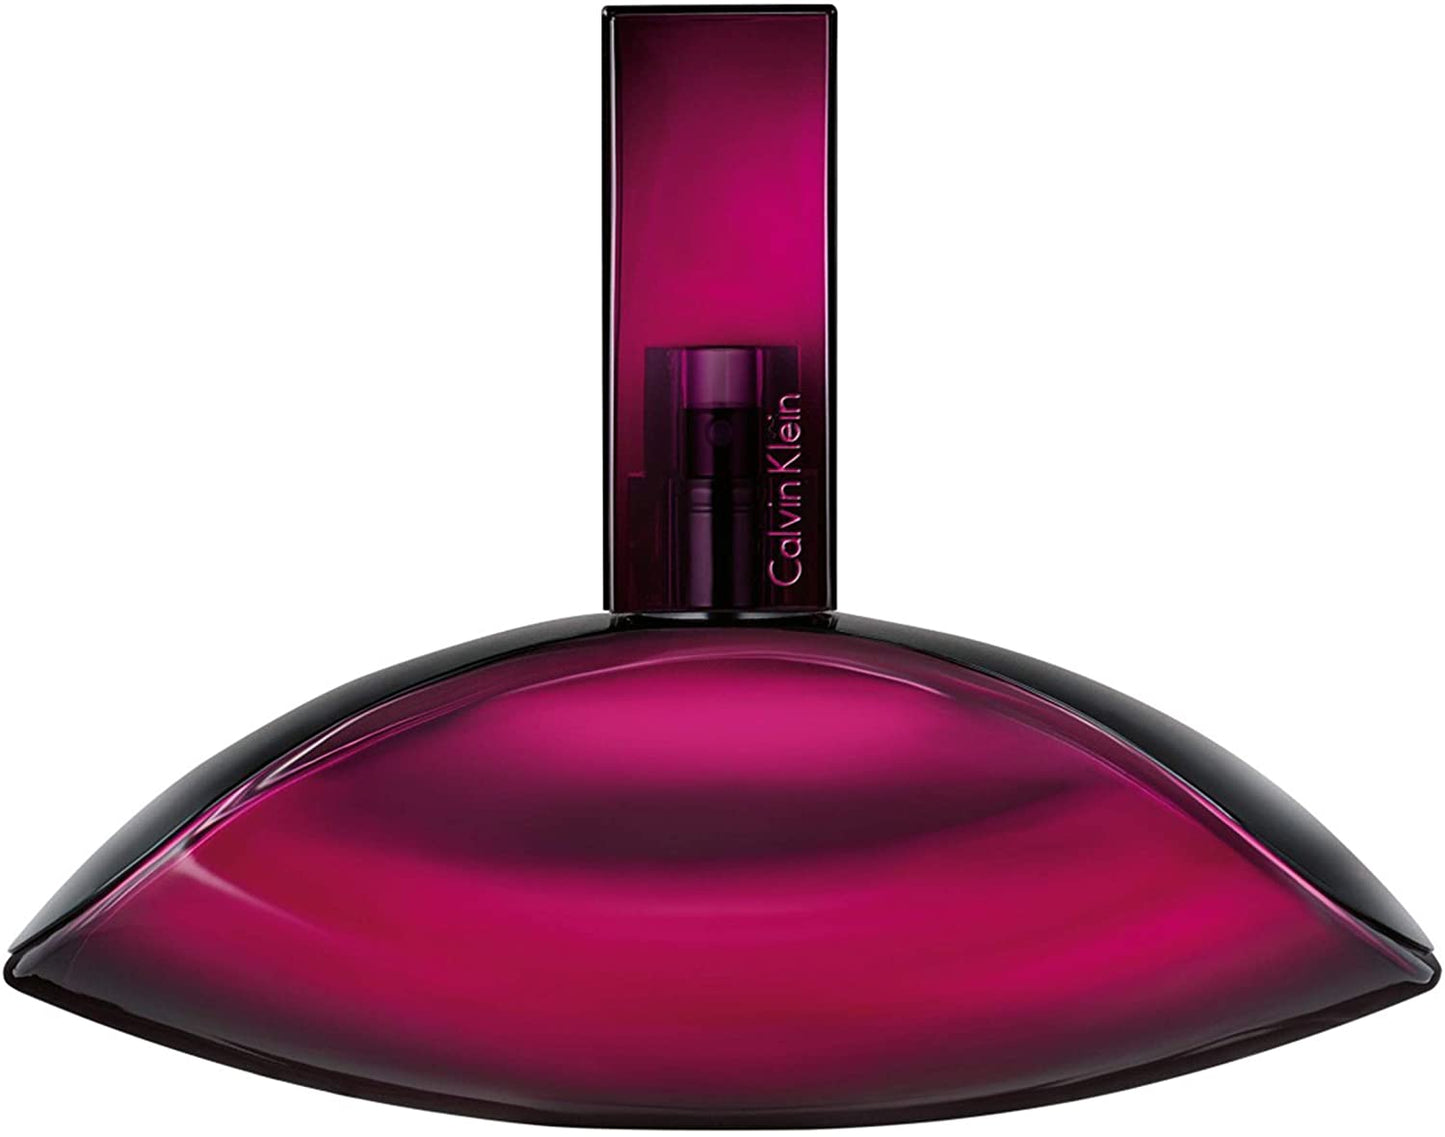 Euphoria Deep Women Eau De Parfum Spray 3.4 oz by Calvin Klein